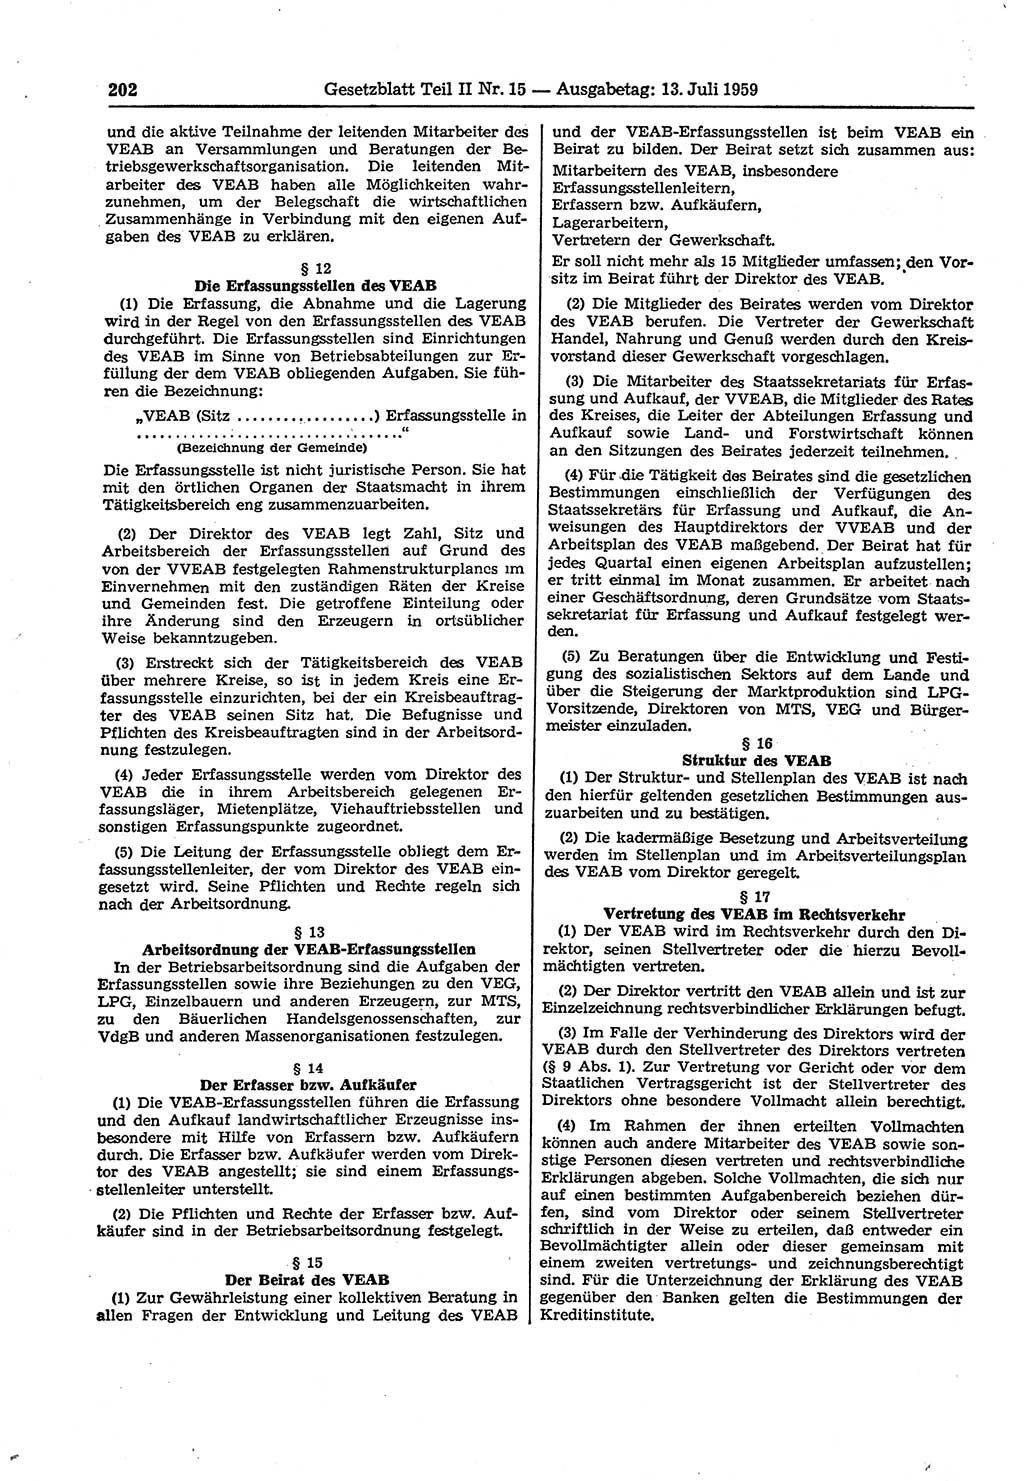 Gesetzblatt (GBl.) der Deutschen Demokratischen Republik (DDR) Teil ⅠⅠ 1959, Seite 202 (GBl. DDR ⅠⅠ 1959, S. 202)